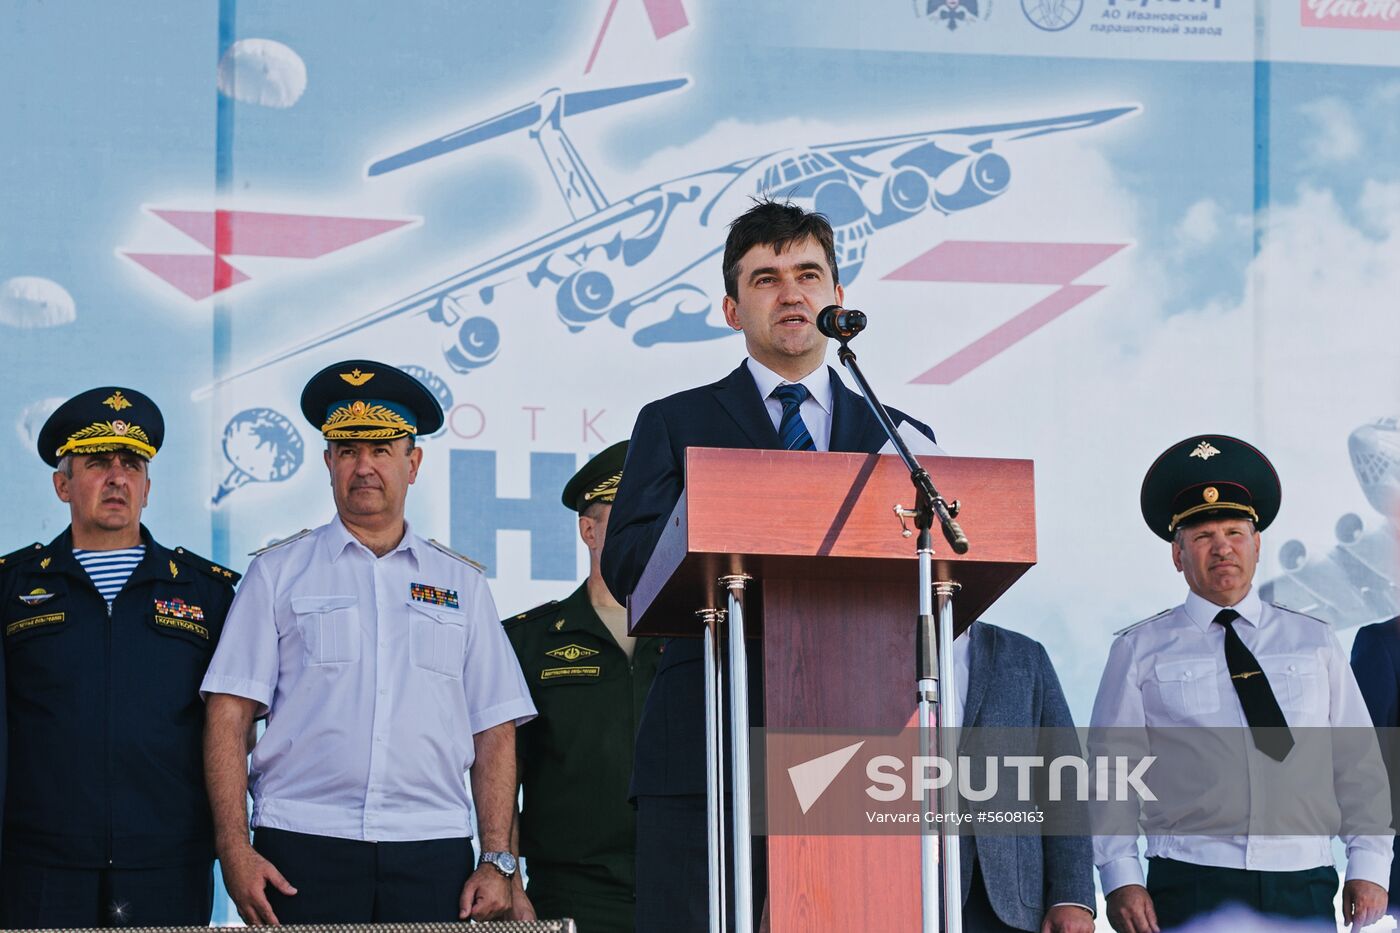 Open Sky military patriotic festival in Ivanovo